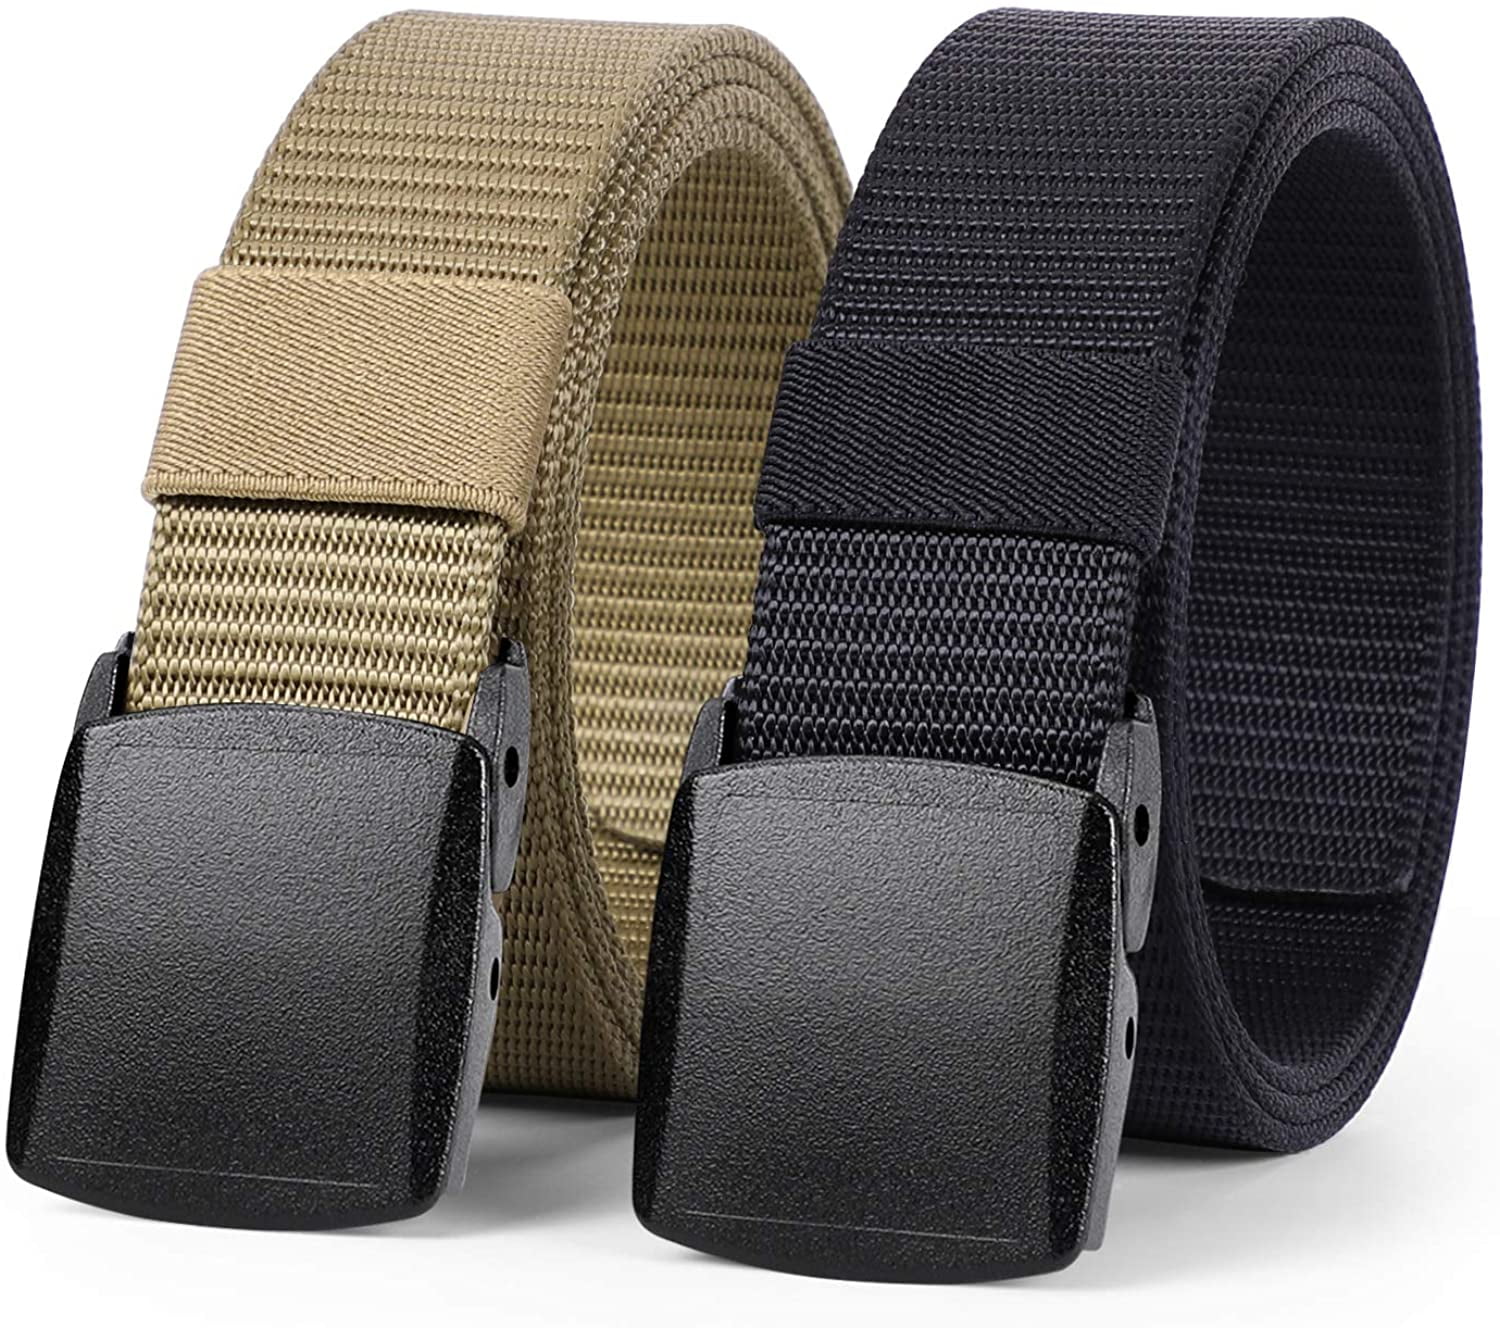 1.5 Nylon Riggers Belts 2 Pack Tactical Belt for Men 